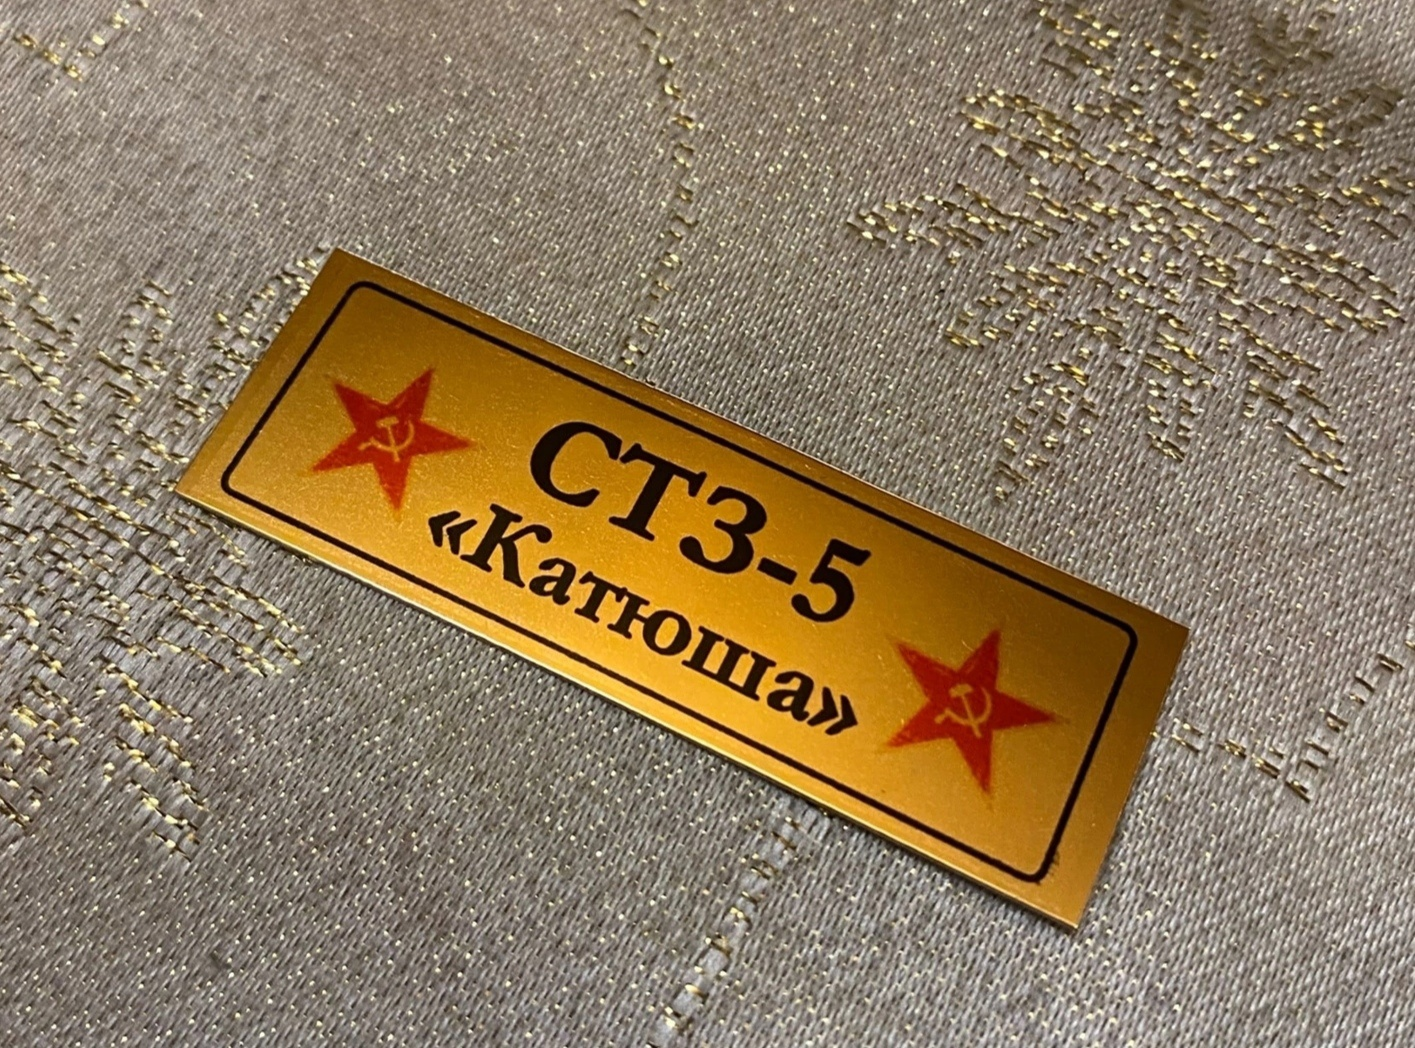 НЕ-35054 Табличка Стз-5 Катюша (Не для свободной продажи)